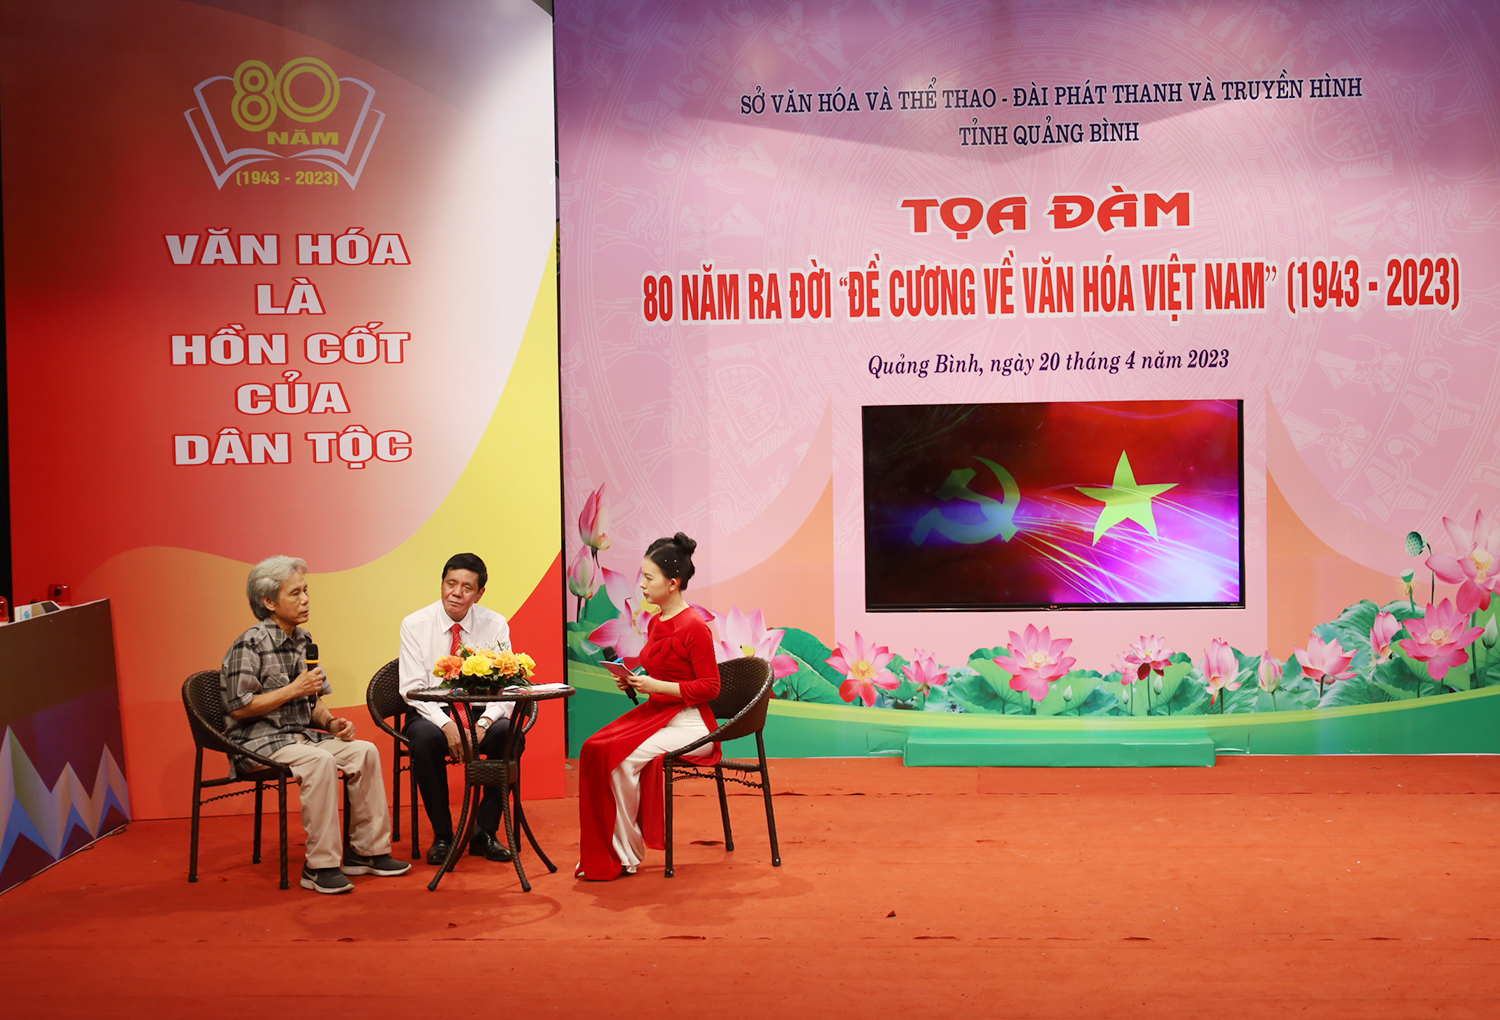 Tọa đàm kỷ niệm 80 năm ra đời "Đề cương về văn hóa Việt Nam"